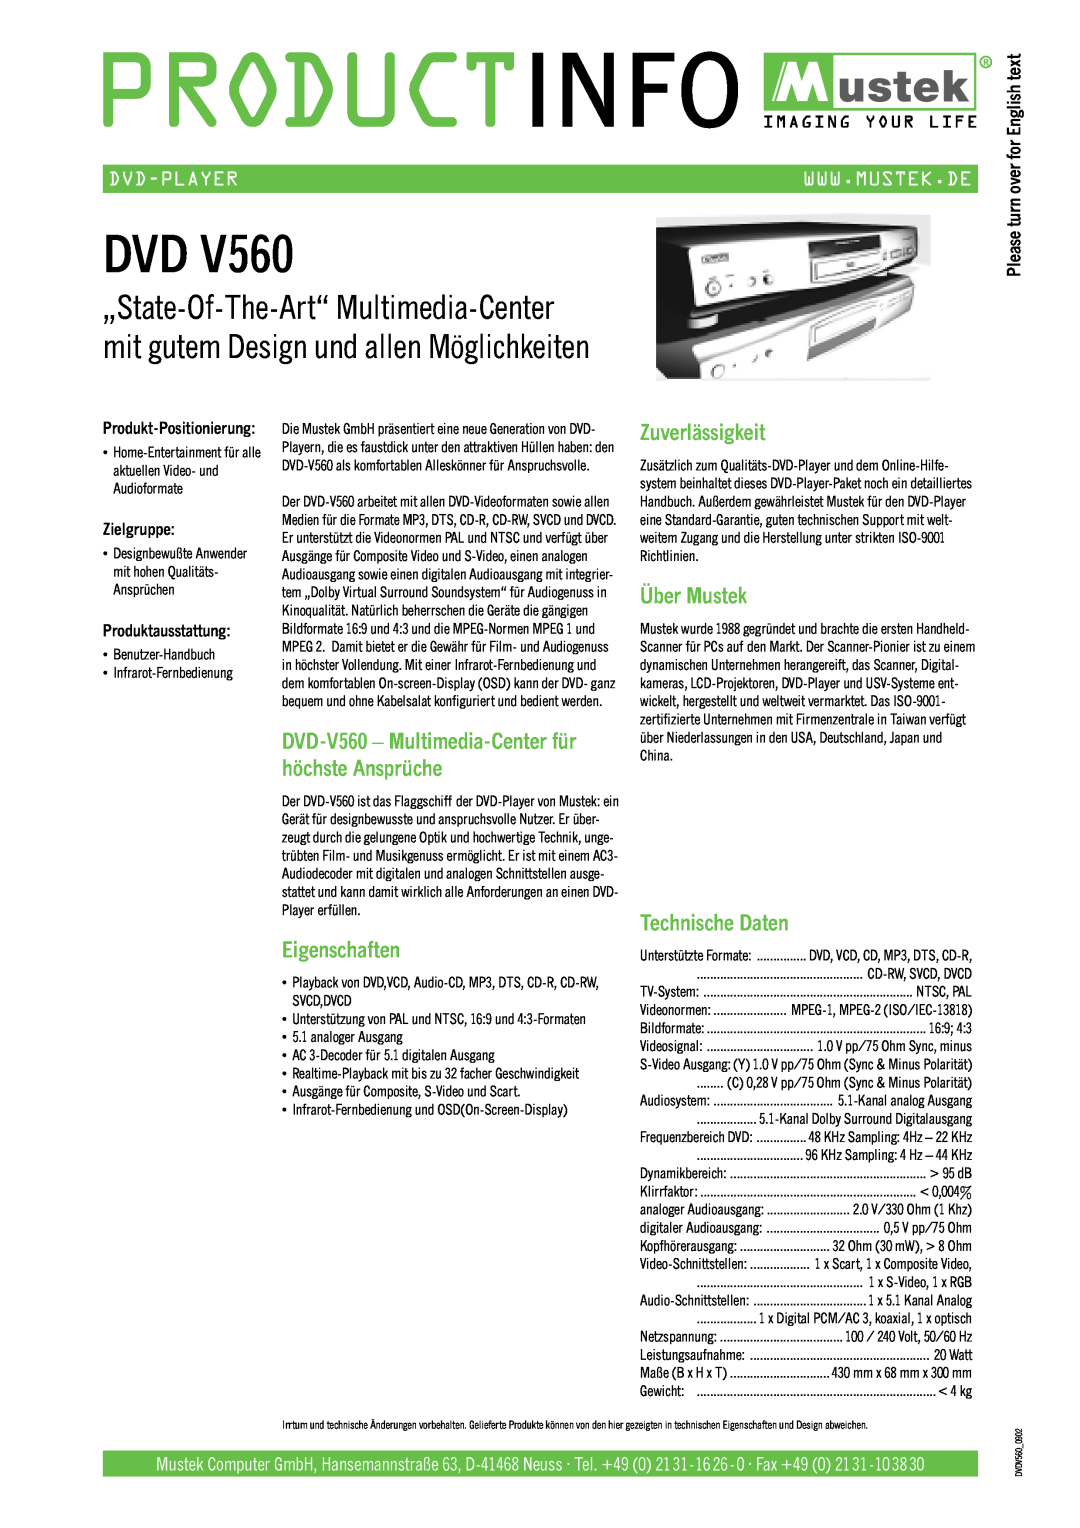 Mustek V560 Eigenschaften, Zuverlässigkeit, Über Mustek, Technische Daten, Dvd-Player, Zielgruppe, Produktausstattung 